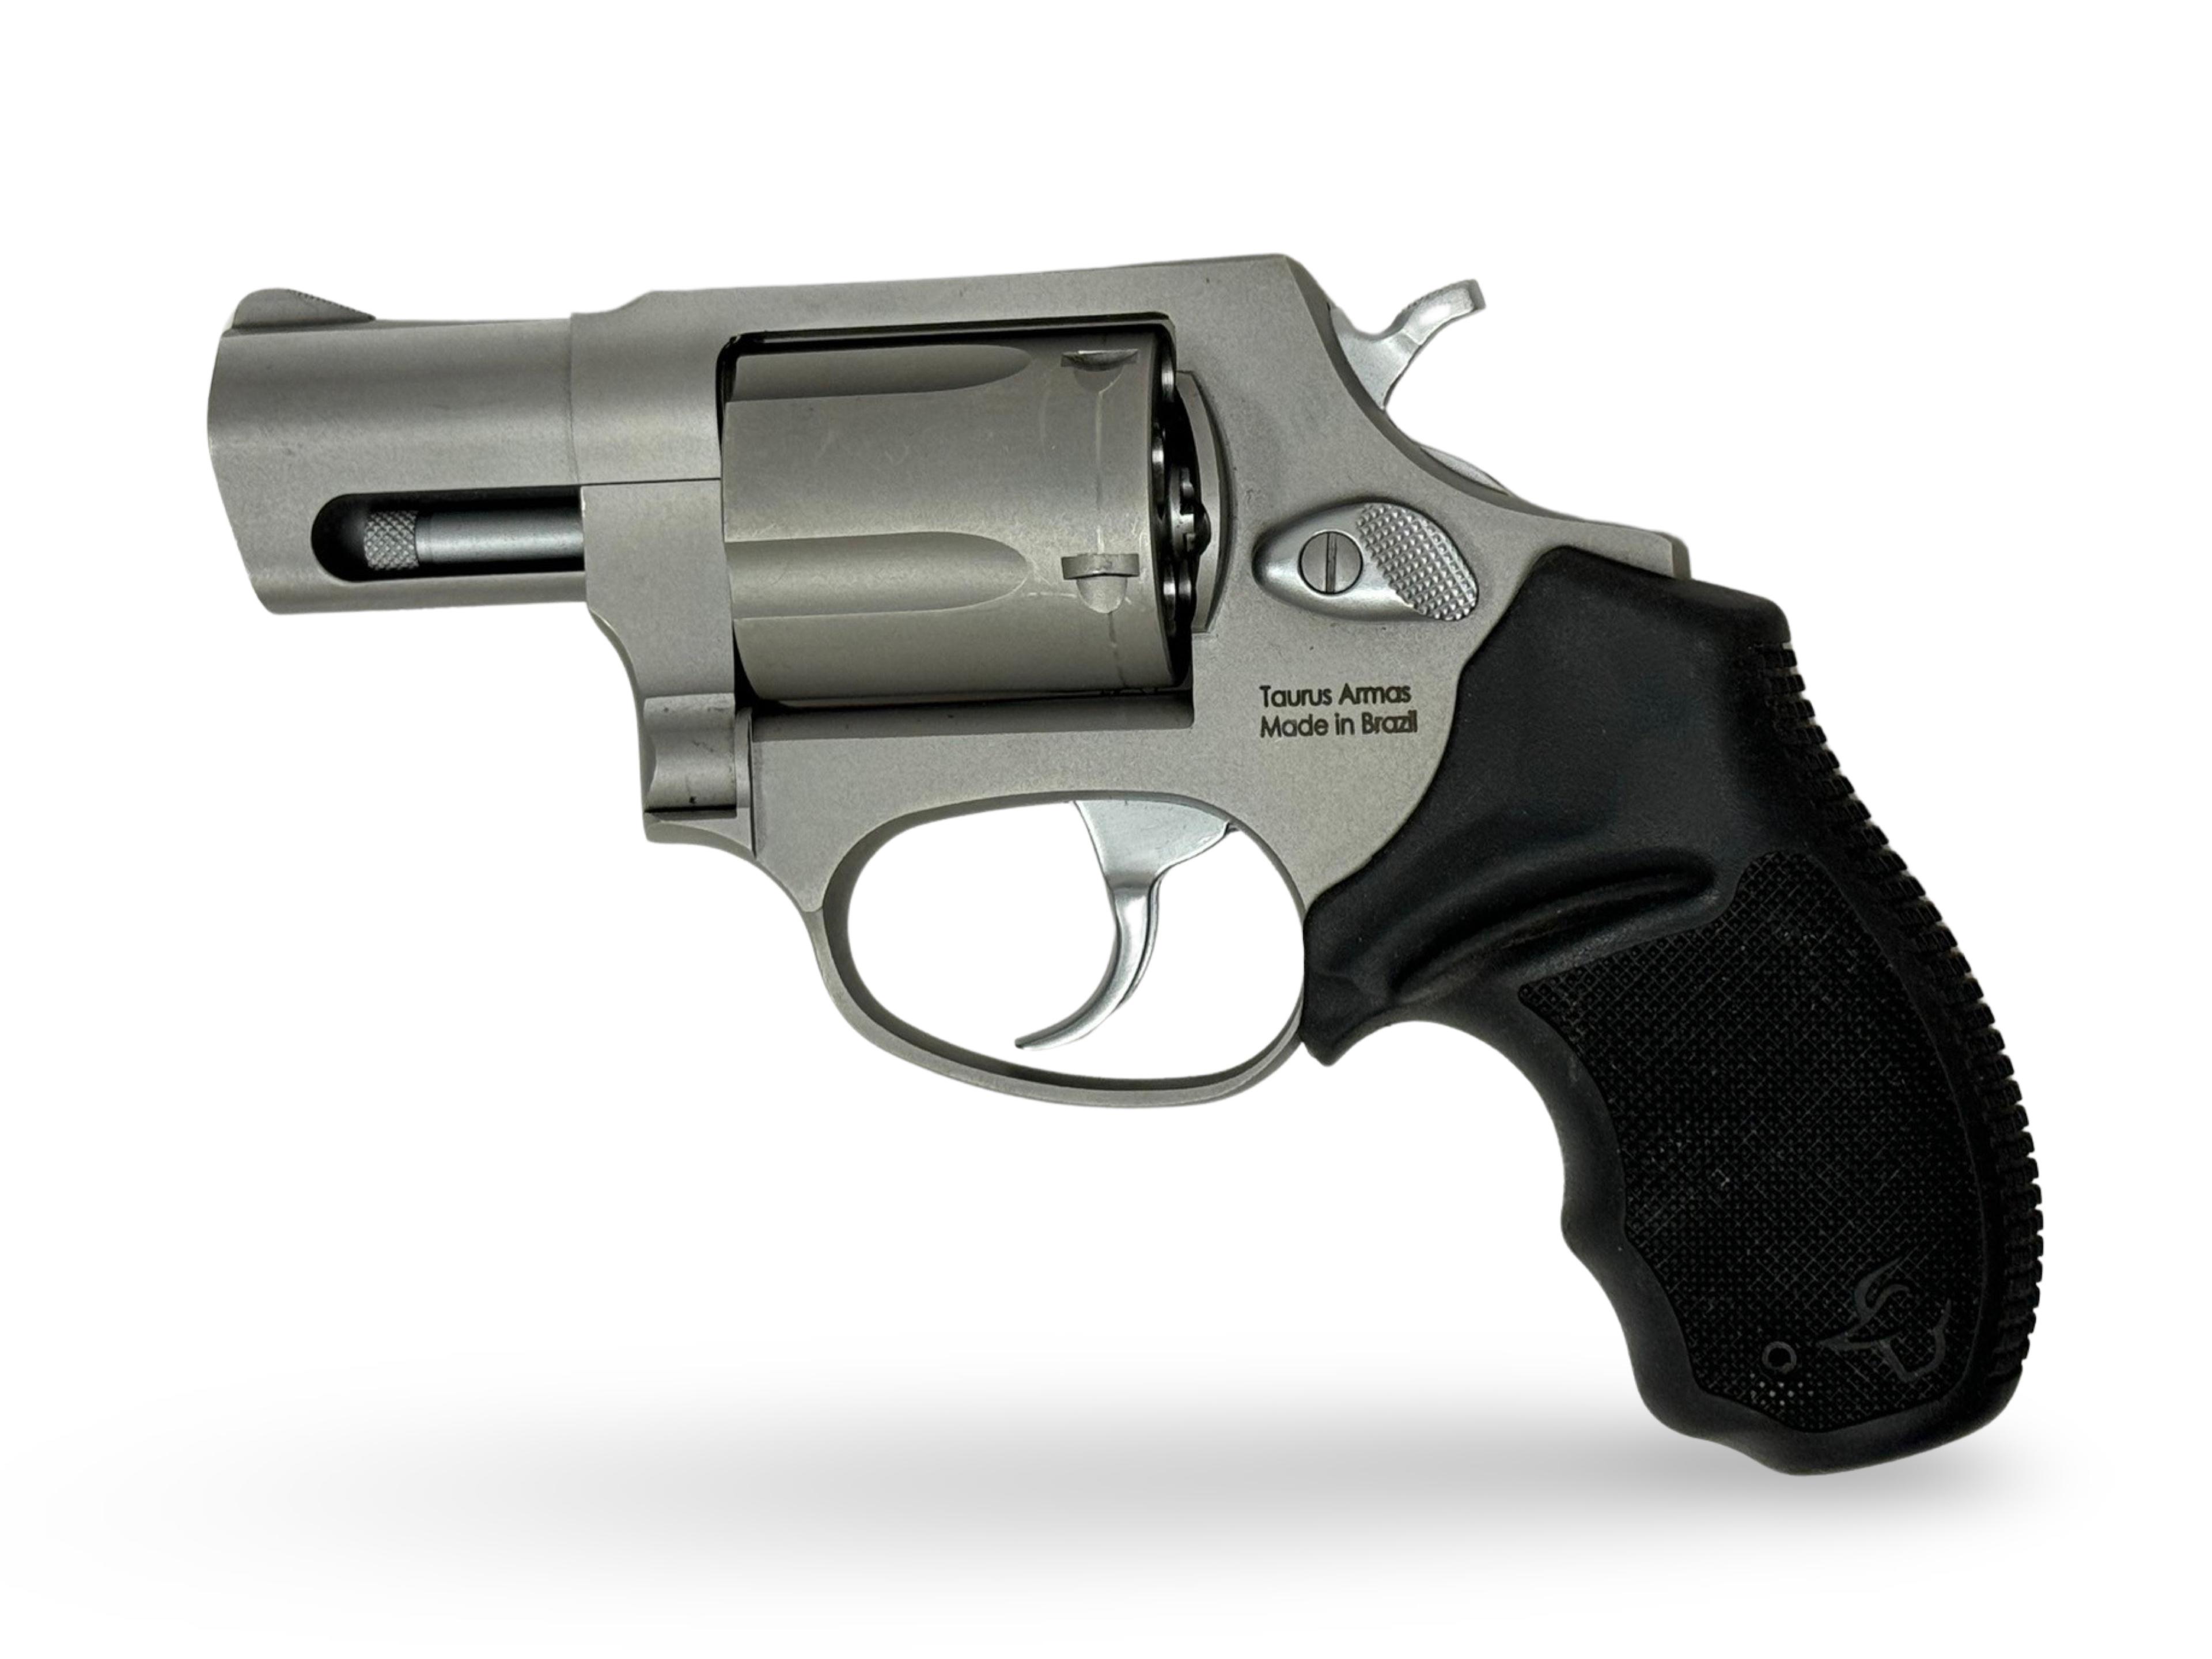 LNIB Taurus Model 605 .357 MAGNUM 2" Stainless Revolver